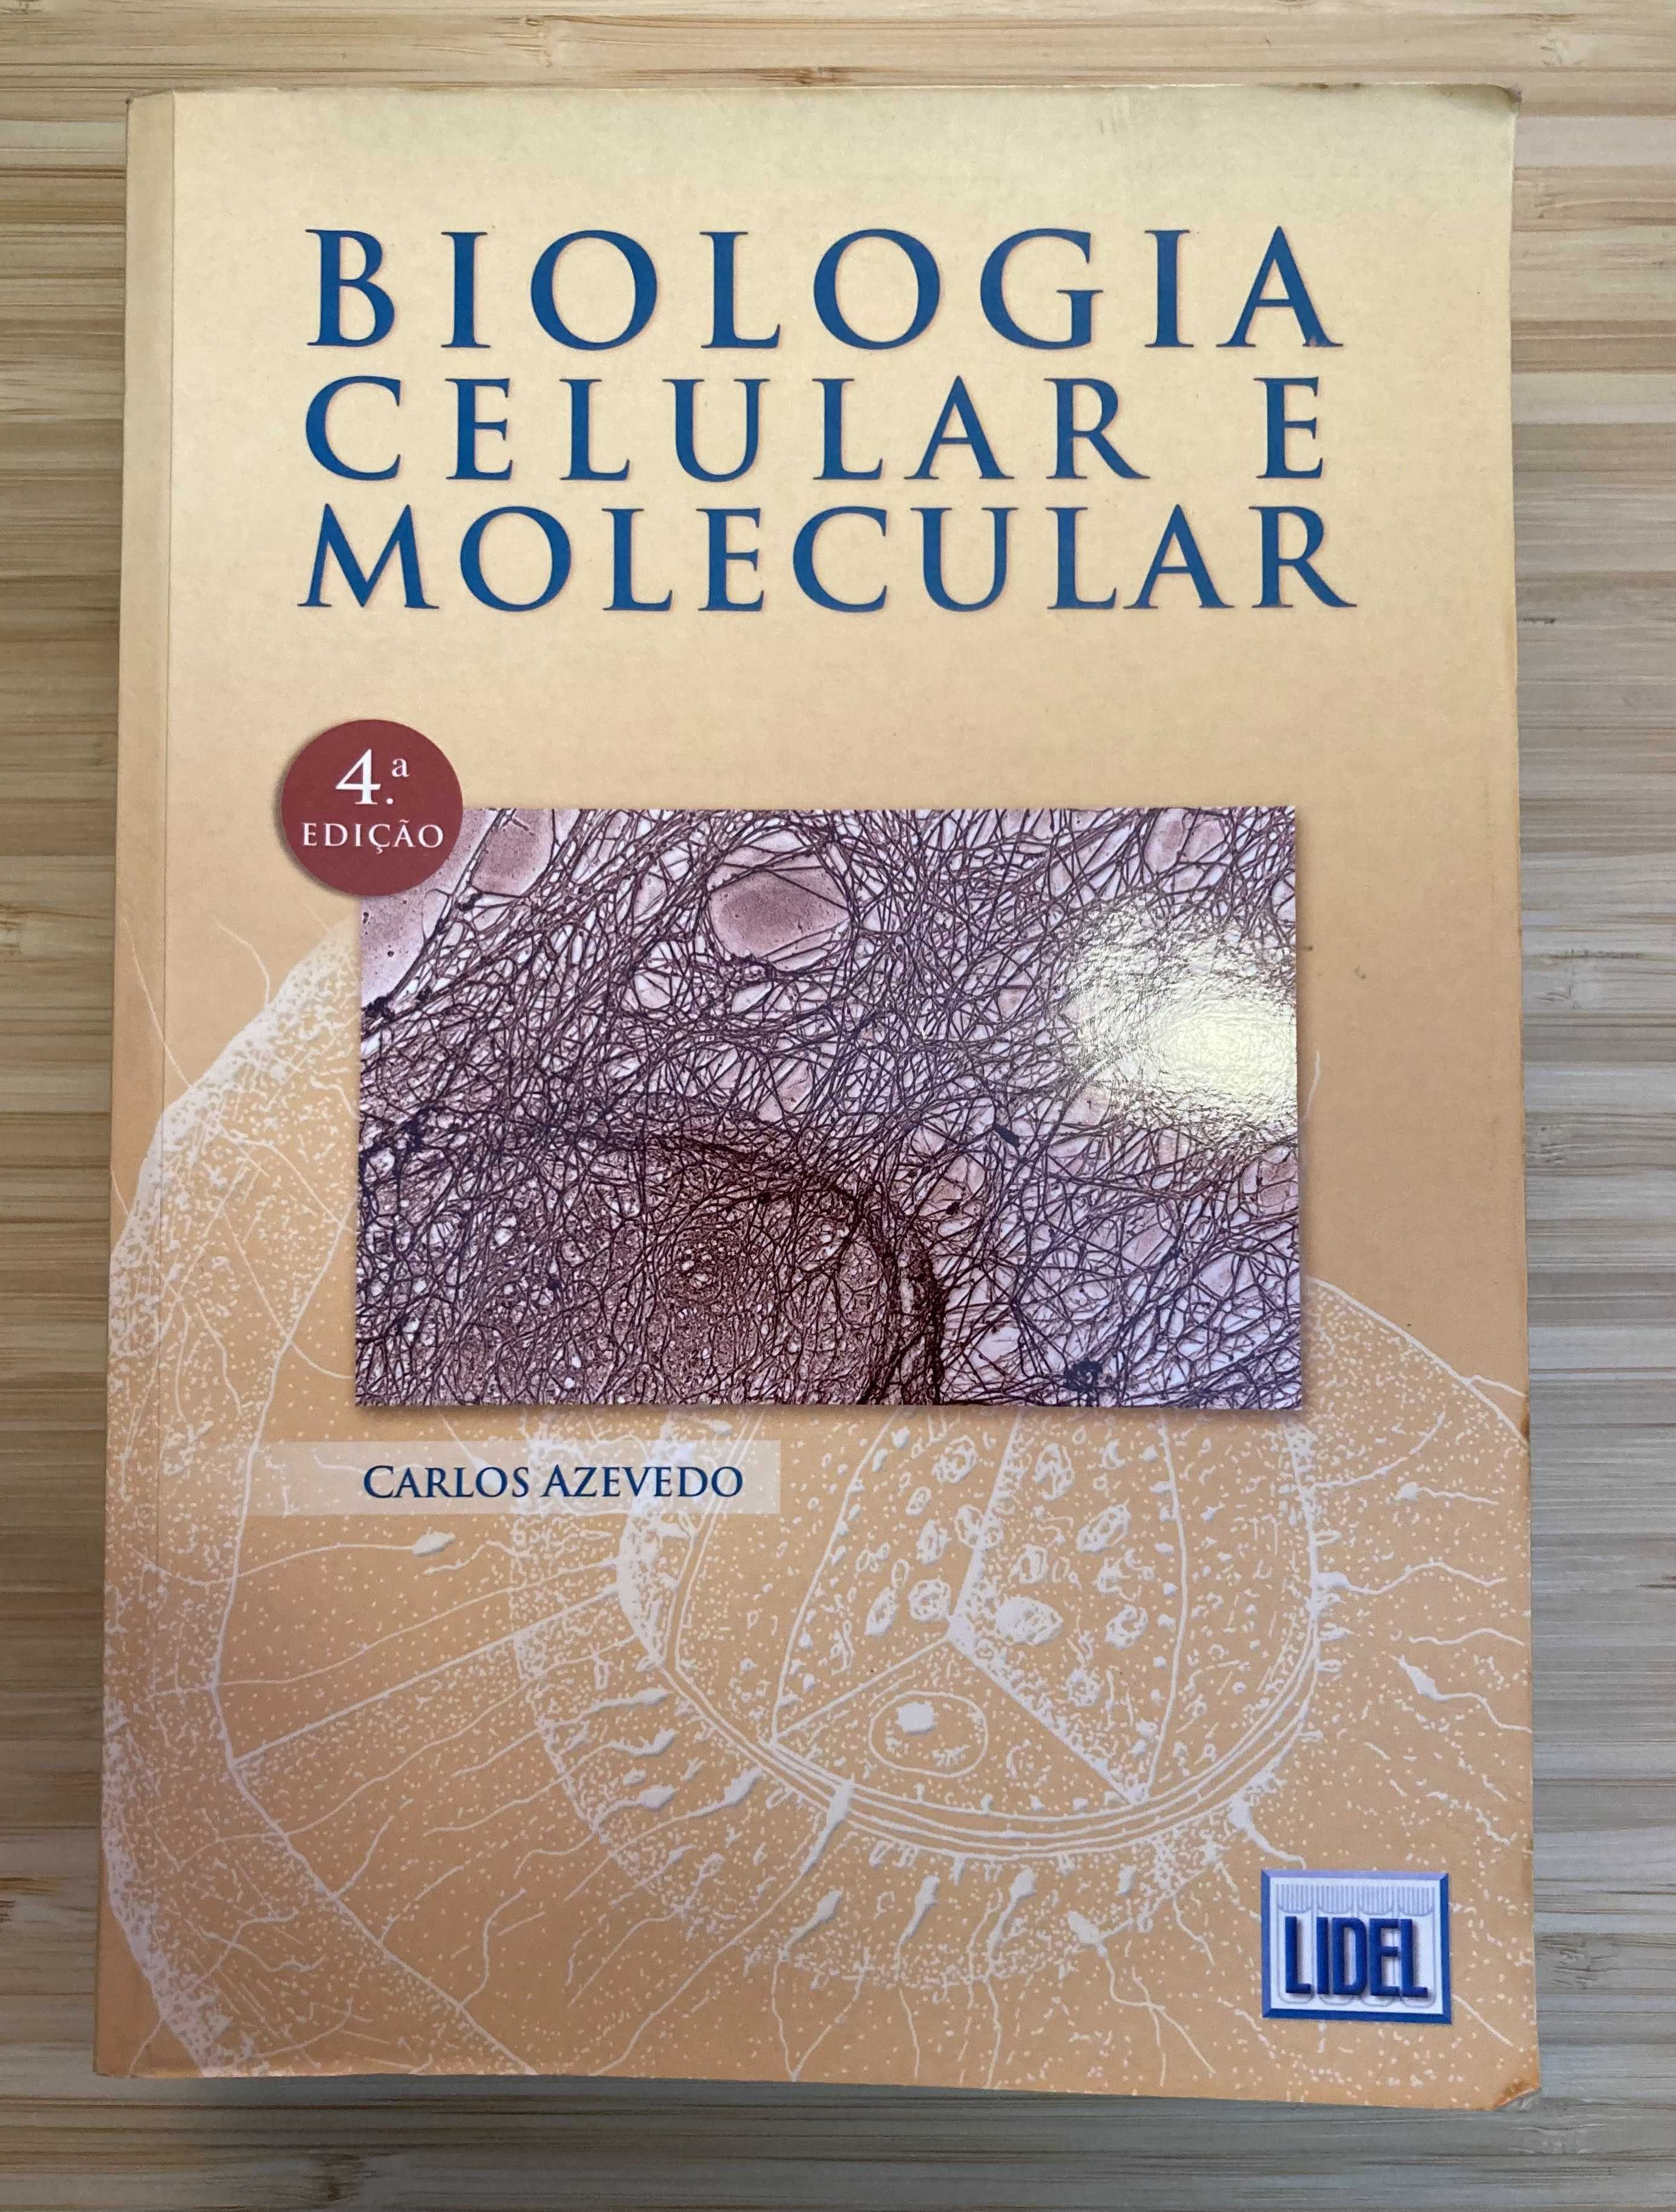 Livro "Biologia Celular e Molecular"- 12€